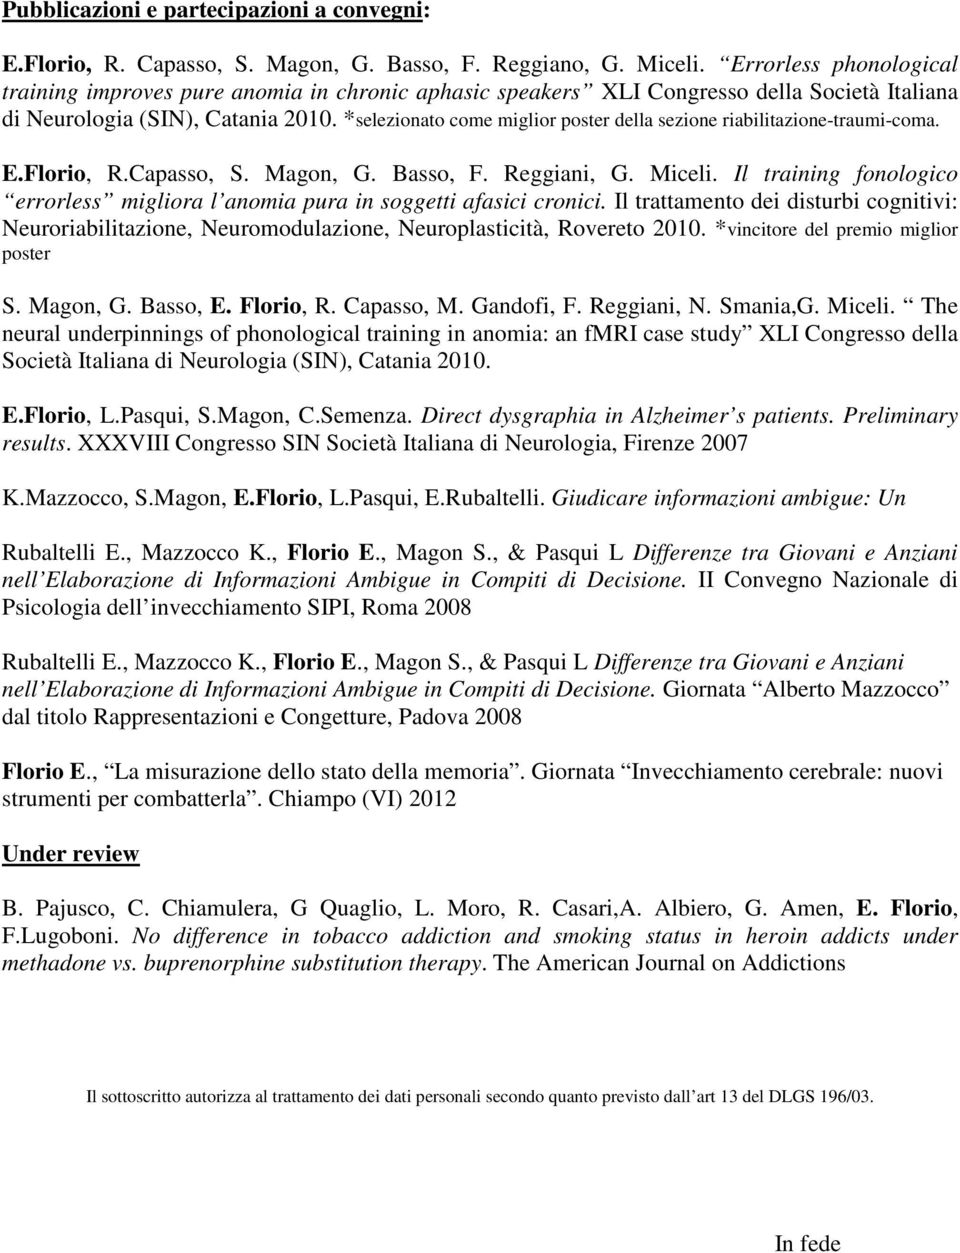 *selezionato come miglior poster della sezione riabilitazione-traumi-coma. E.Florio, R.Capasso, S. Magon, G. Basso, F. Reggiani, G. Miceli.